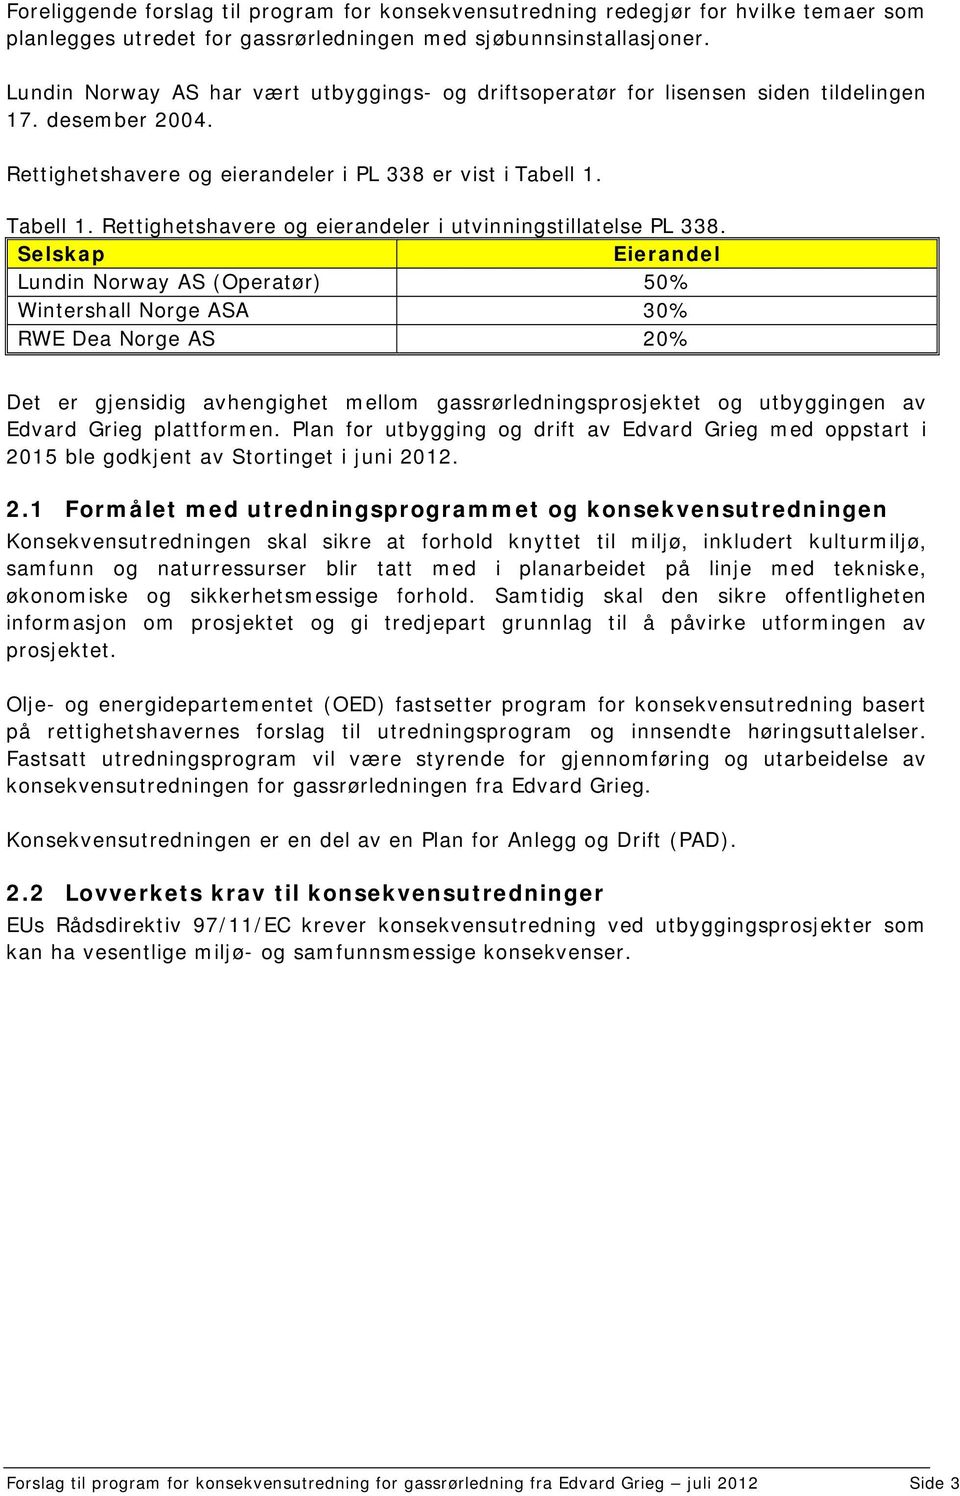 Tabell 1. Rettighetshavere og eierandeler i utvinningstillatelse PL 338.